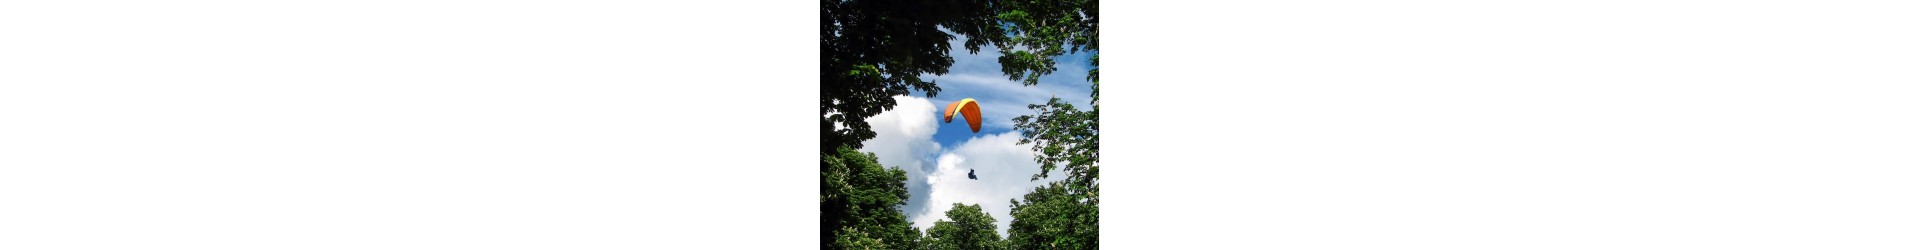 Vol en parapente : Une aventure céleste pleine de liberté et de vues spectaculaires